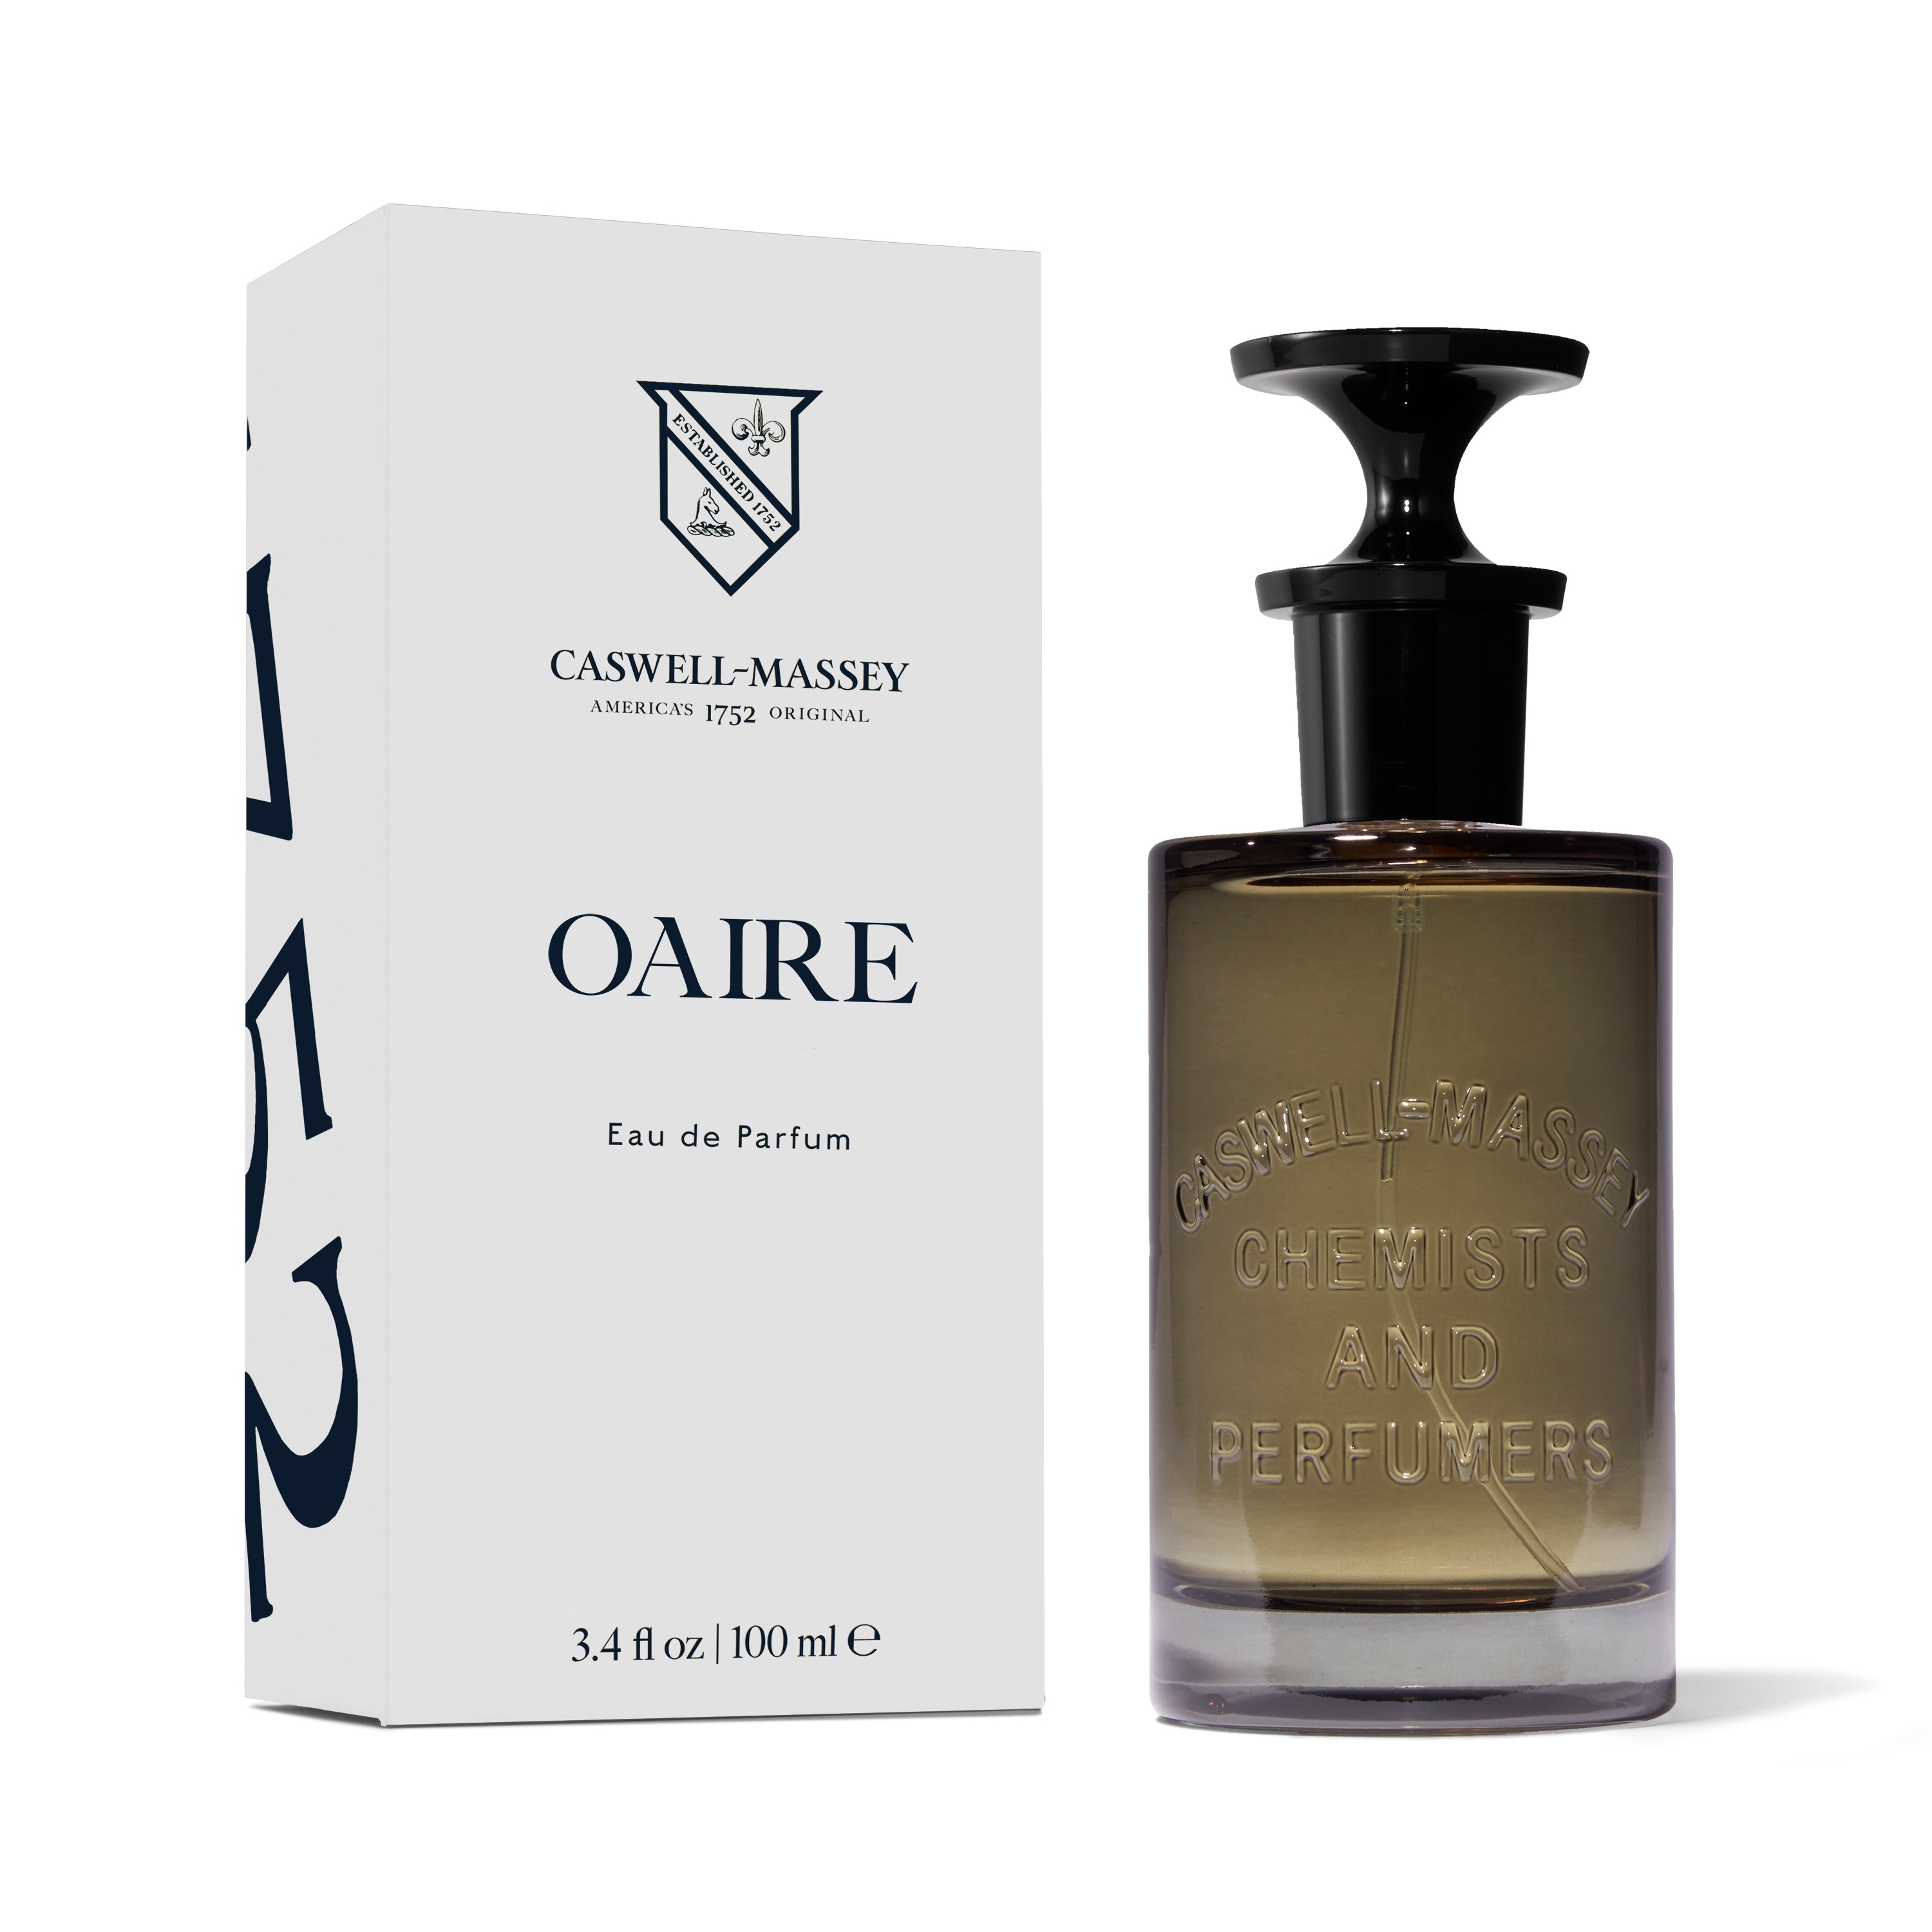 Caswell-Massey Oaire Eau de Parfum, fragrance bottle shown next to box, 100ml